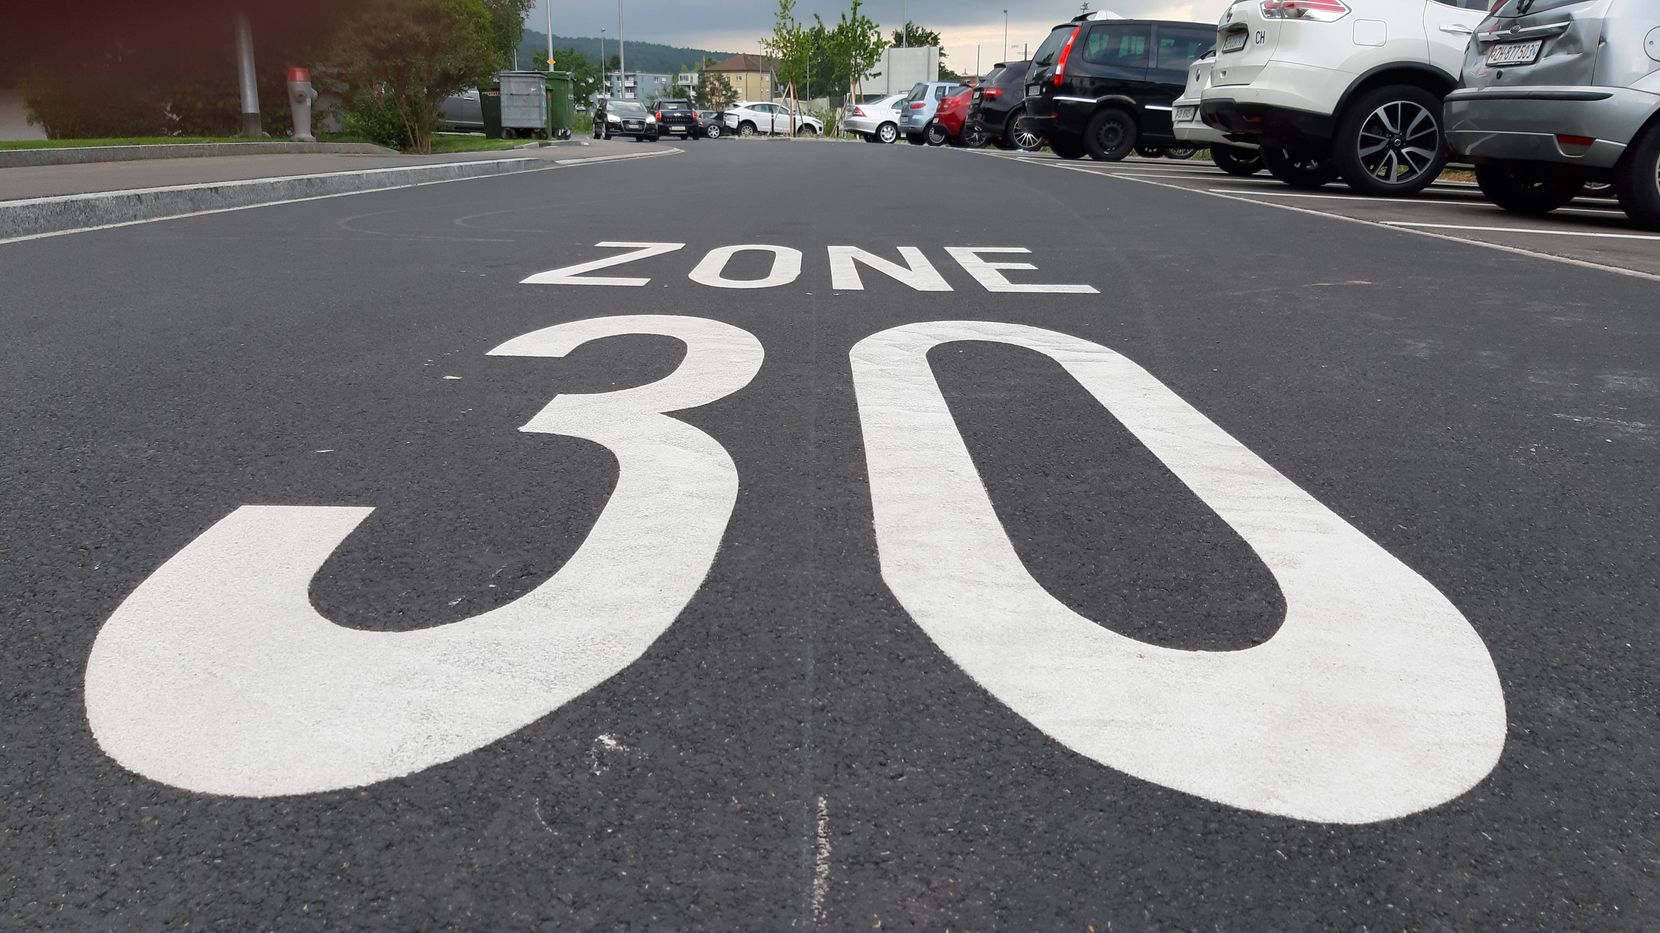 Tempo-30-Markierung auf einer frisch asphaltierten Quartierstrasse.